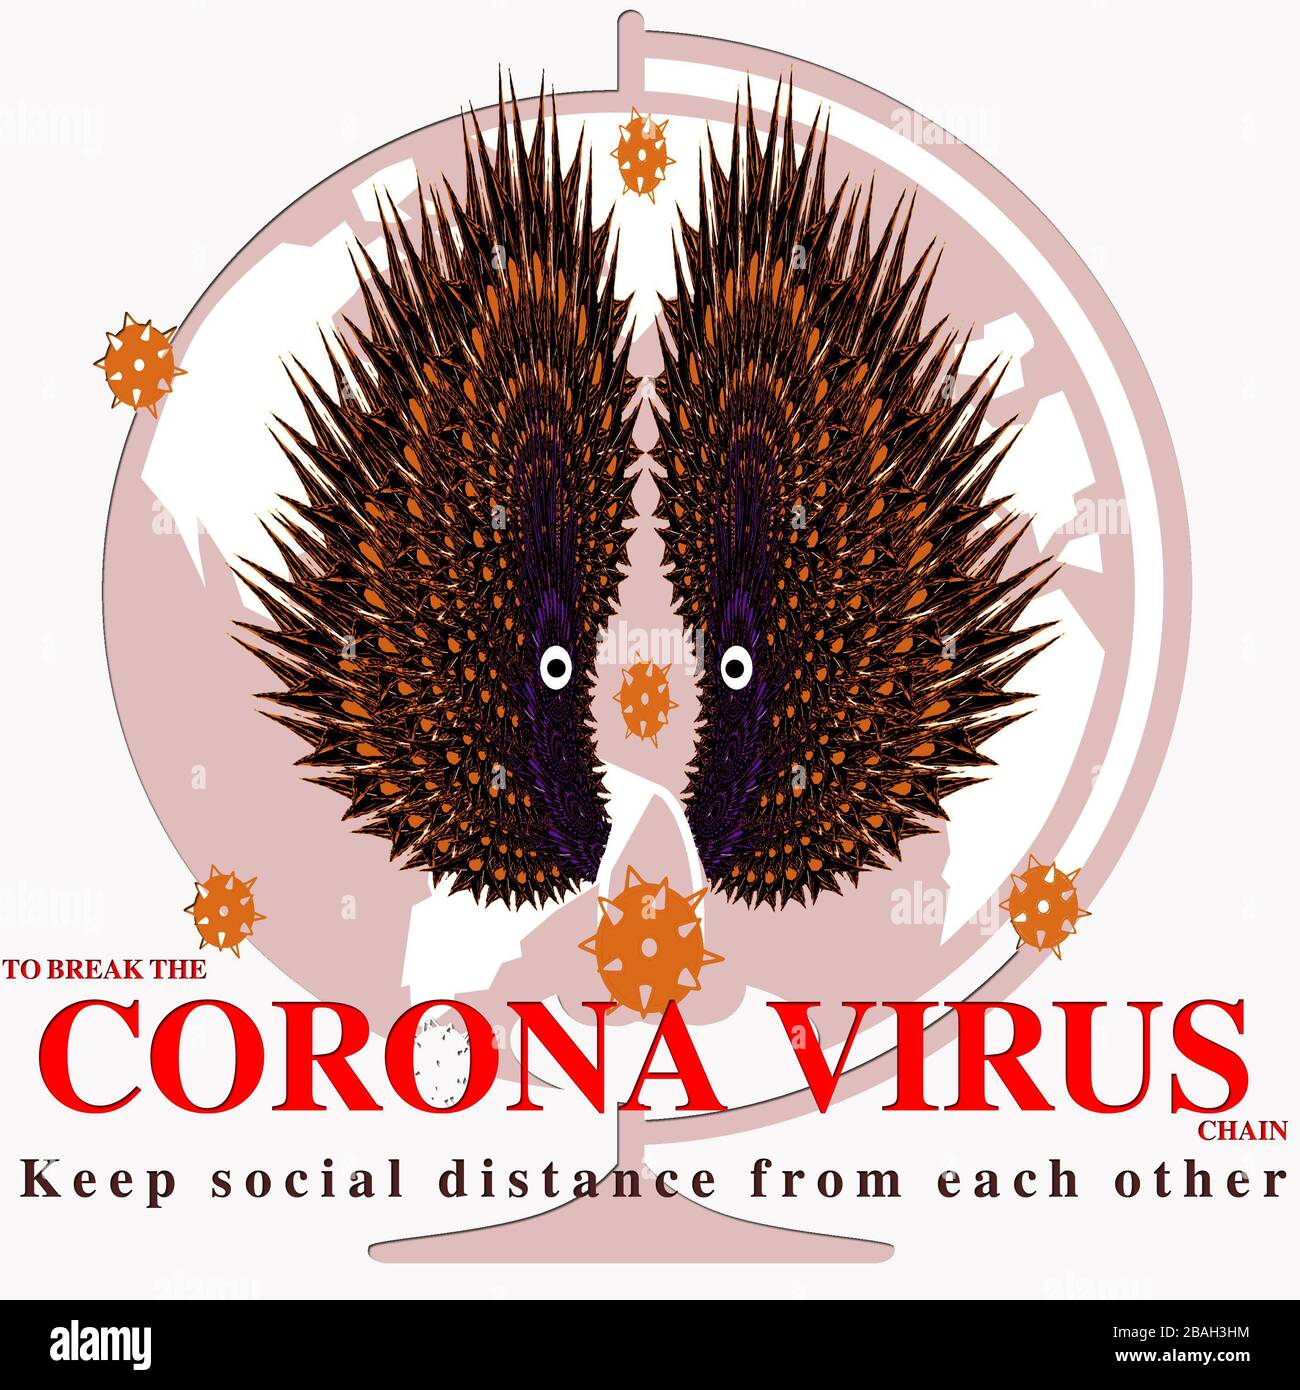 Le virus Corona rompez l'illustration et le message de la chaîne Banque D'Images